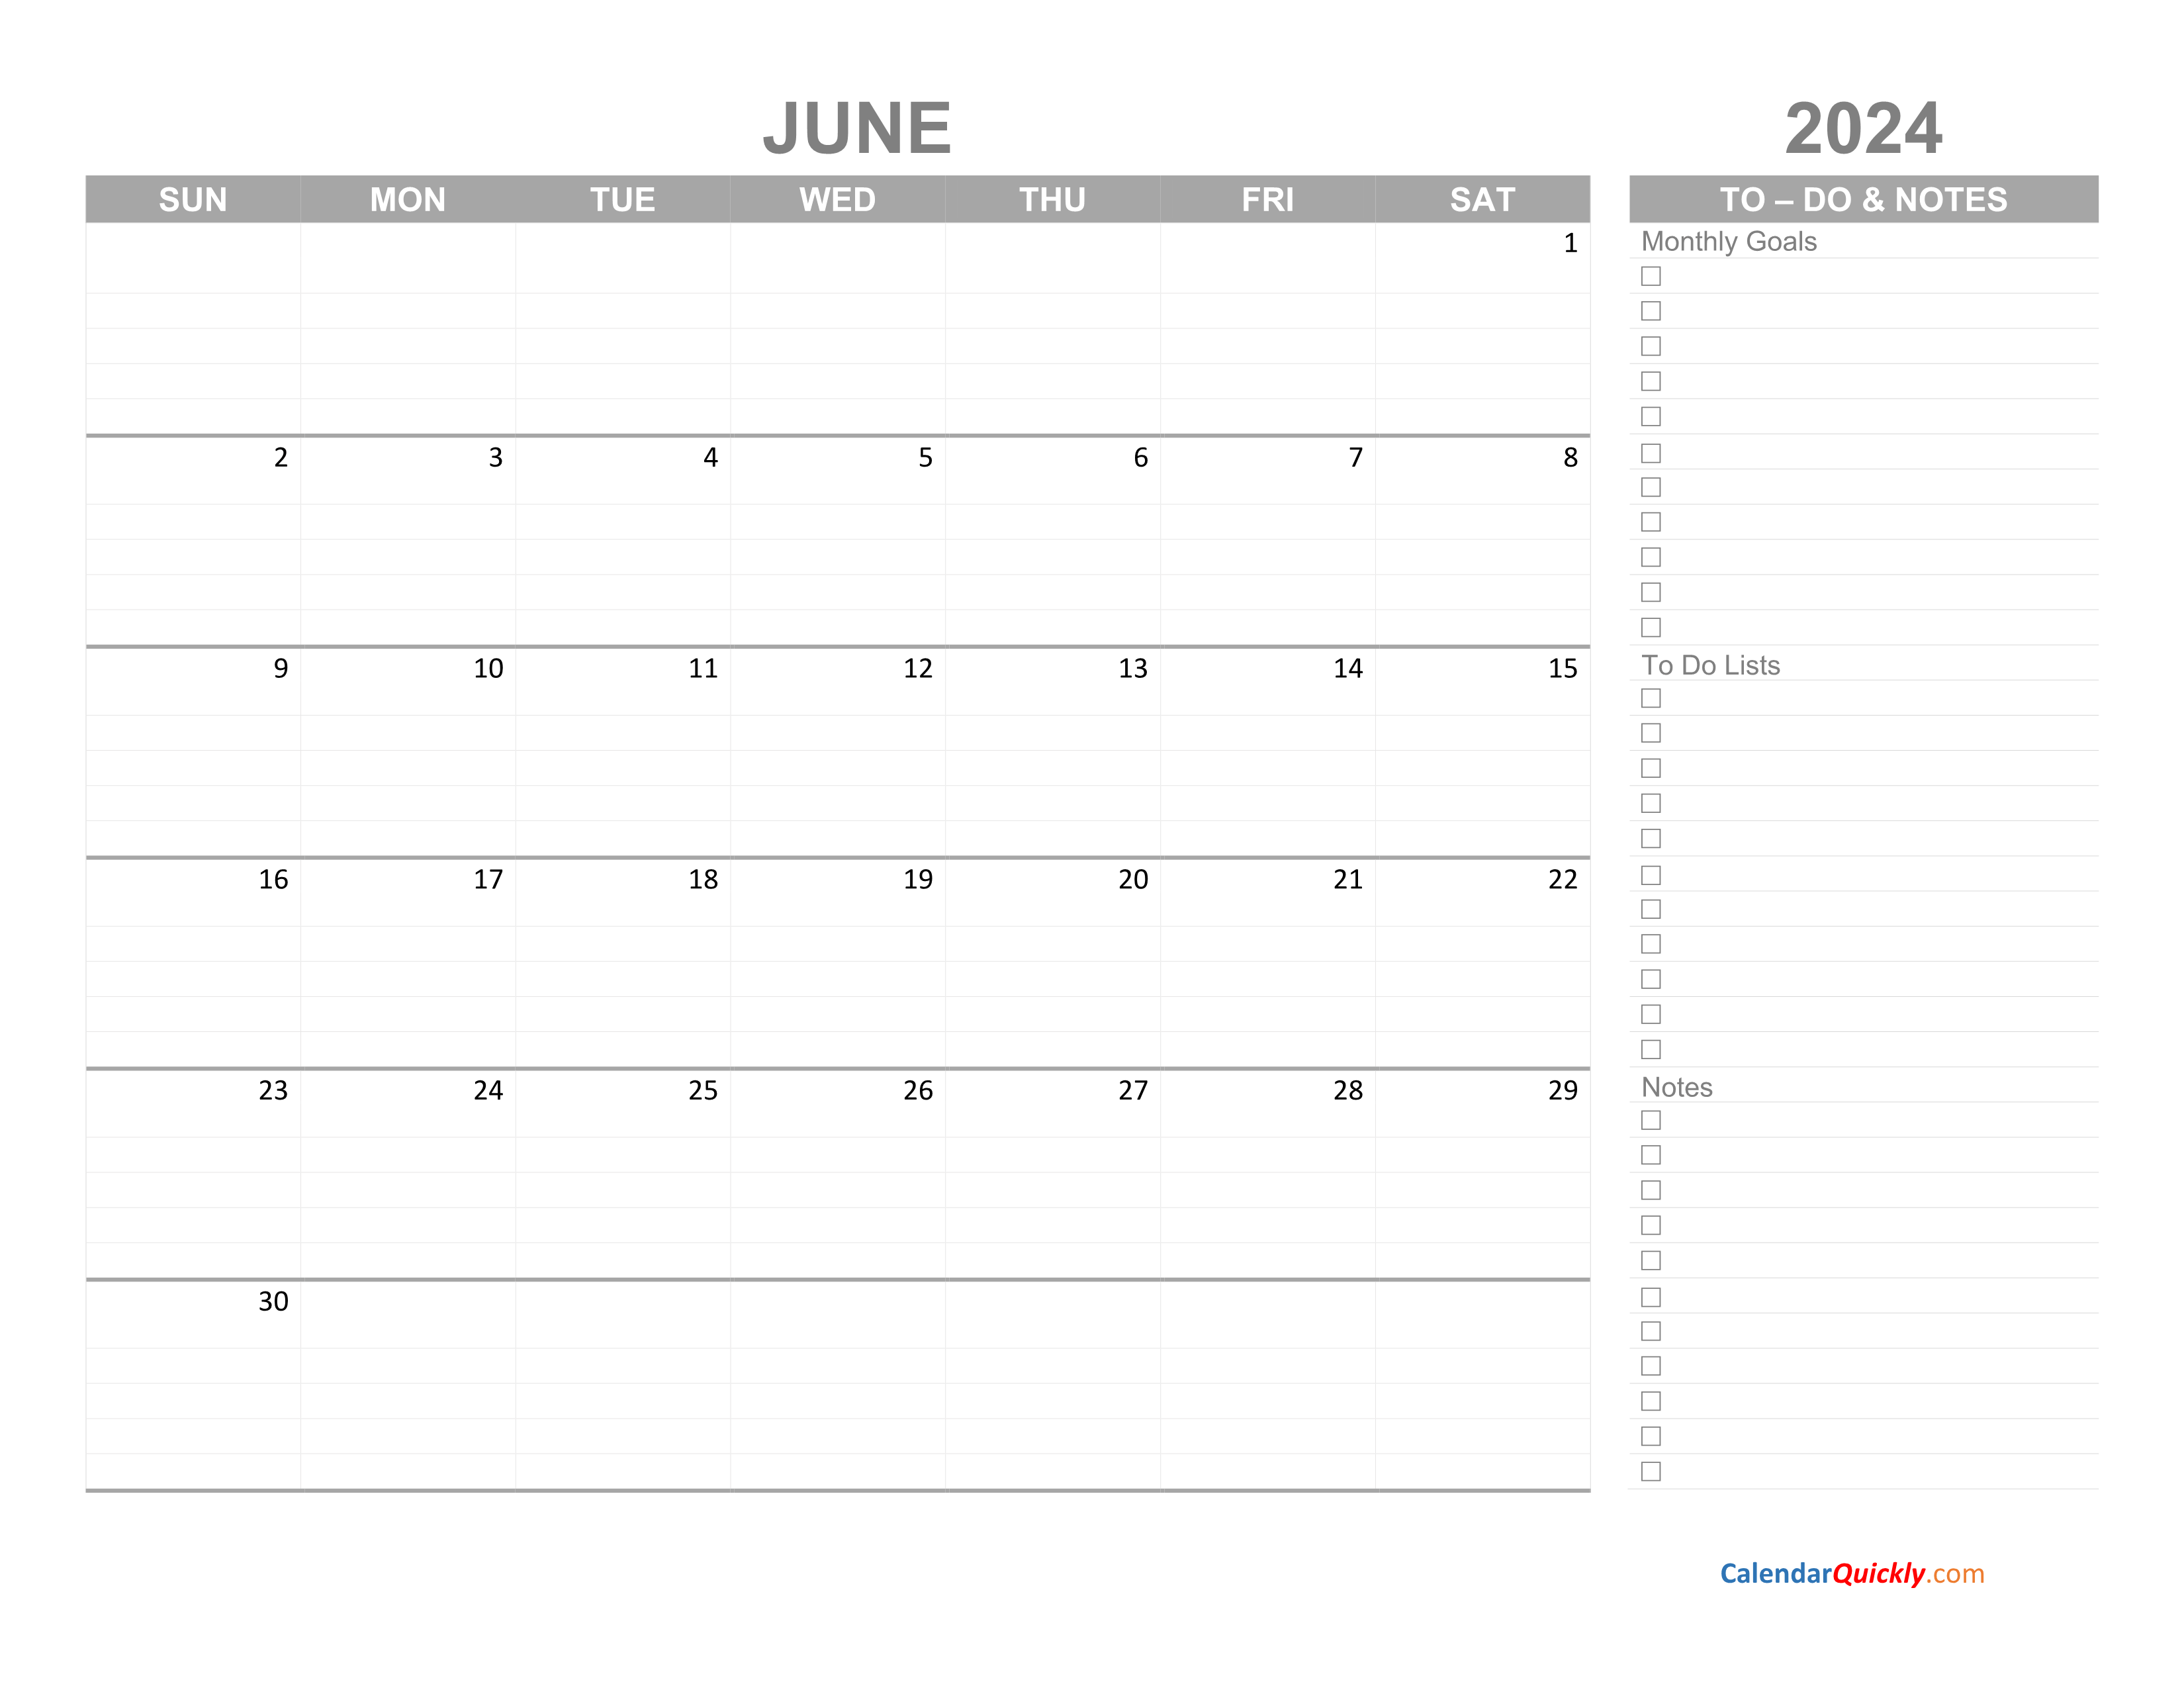 June 2024 Calendar with To Do List Calendar Quickly